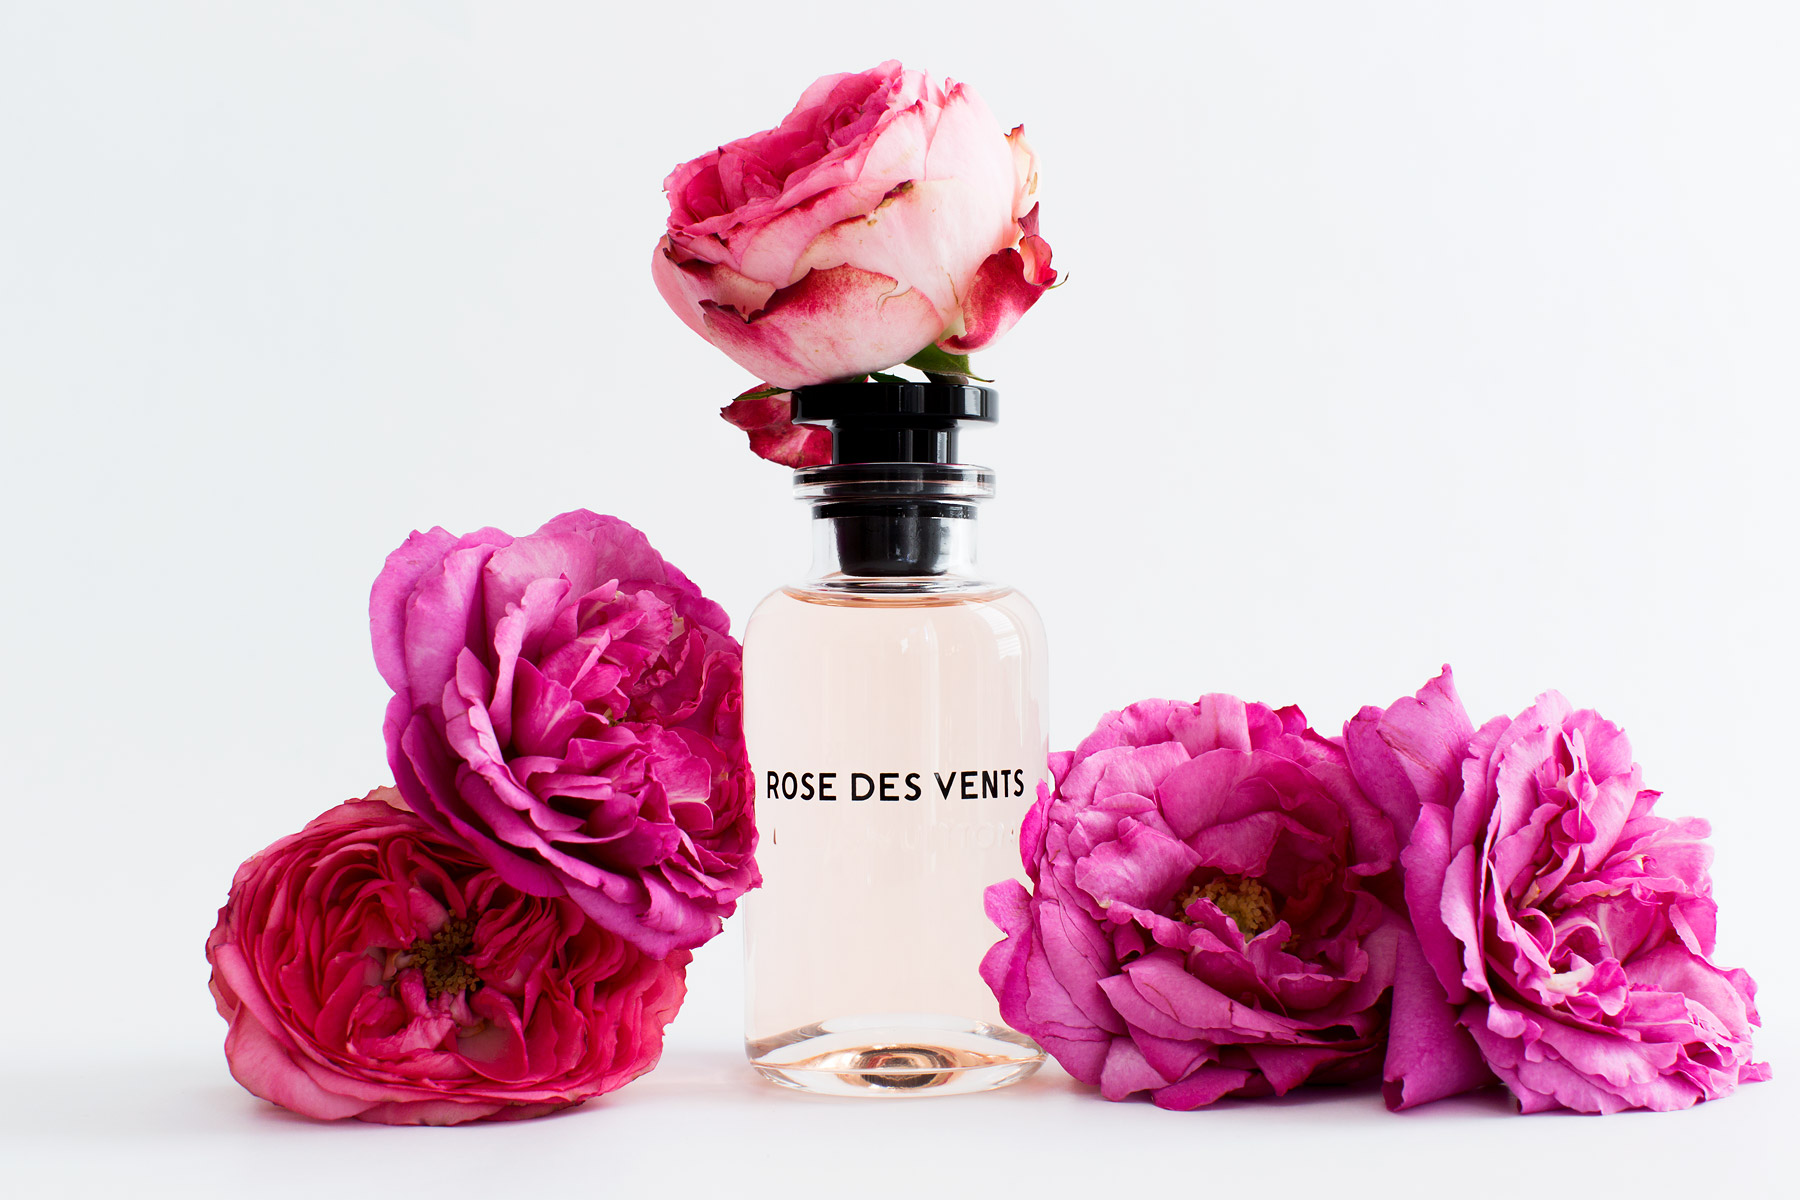 Les Parfums Louis Vuitton — Paris in Four Months